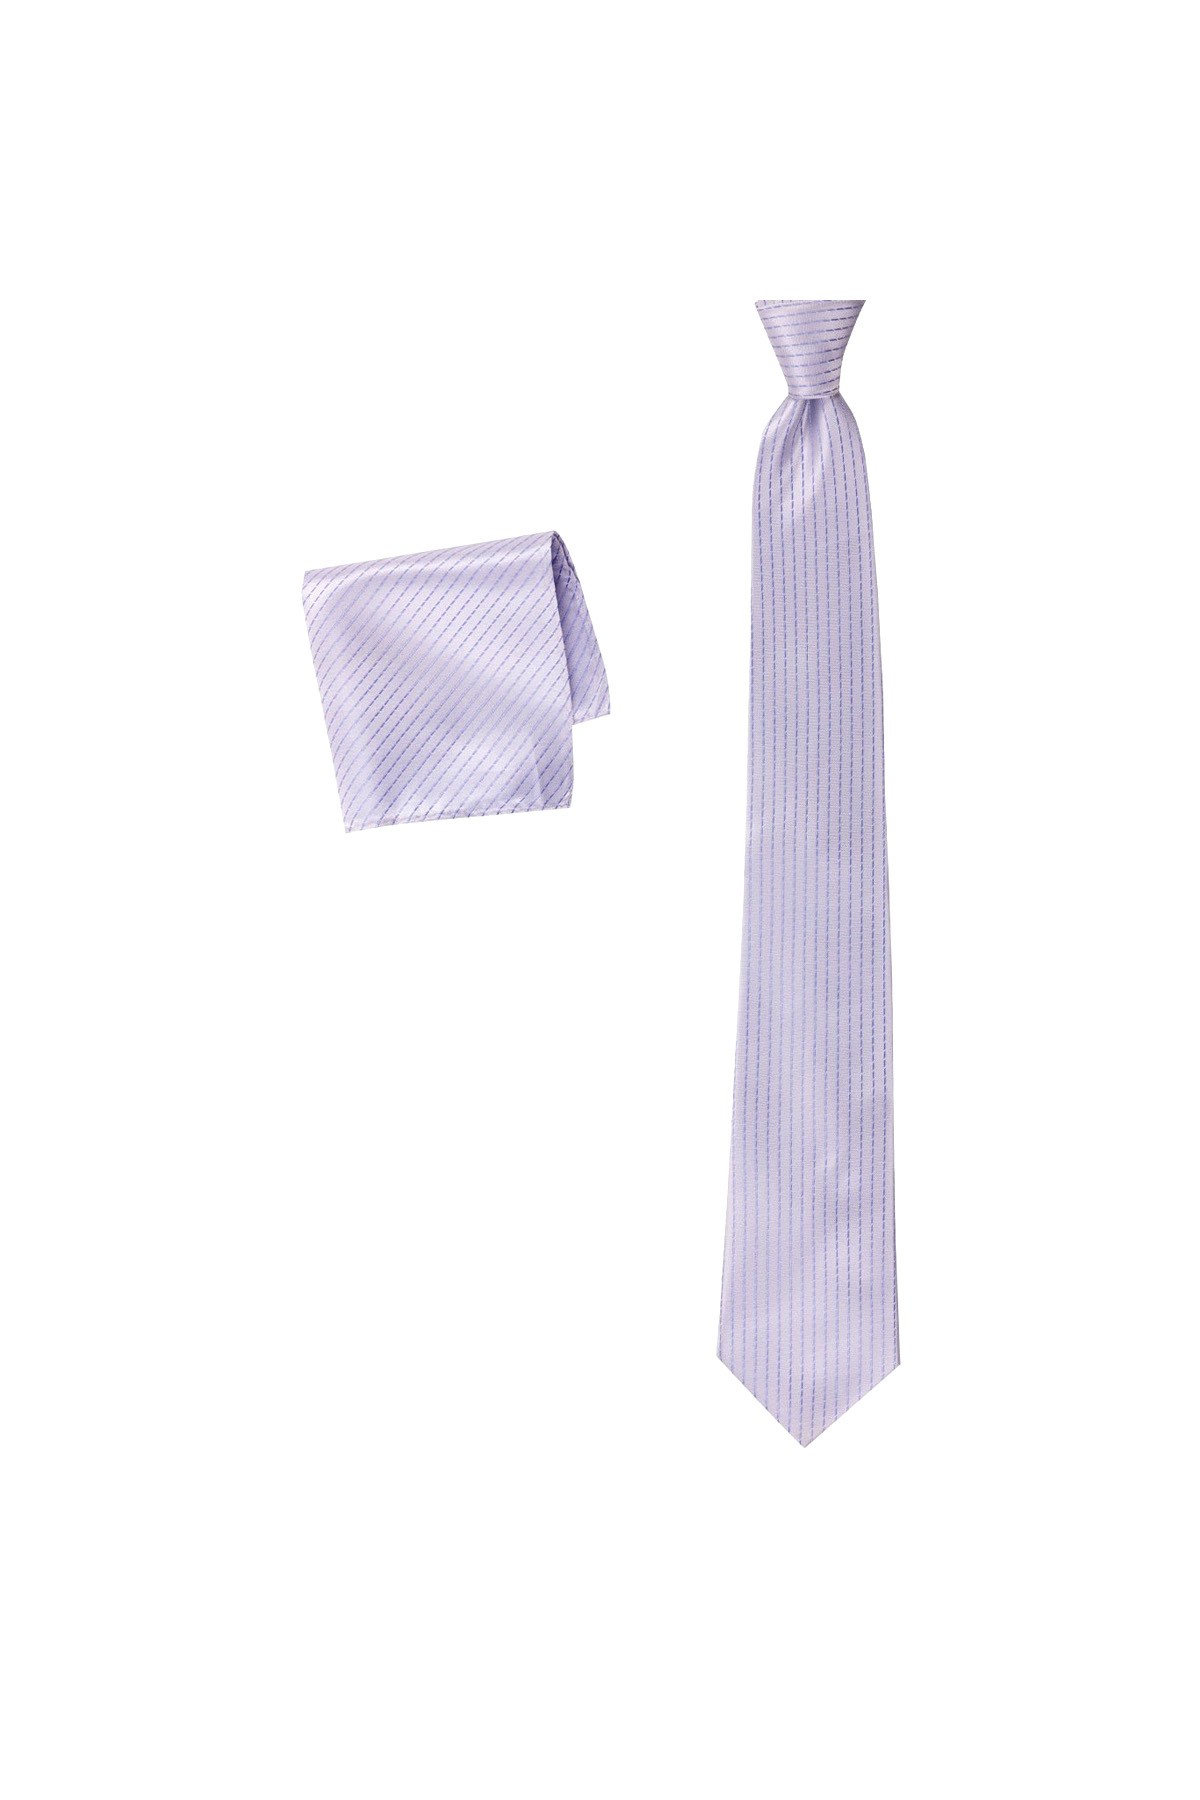 İnce çizgili 8 cm genişliğinde mendilli kravat